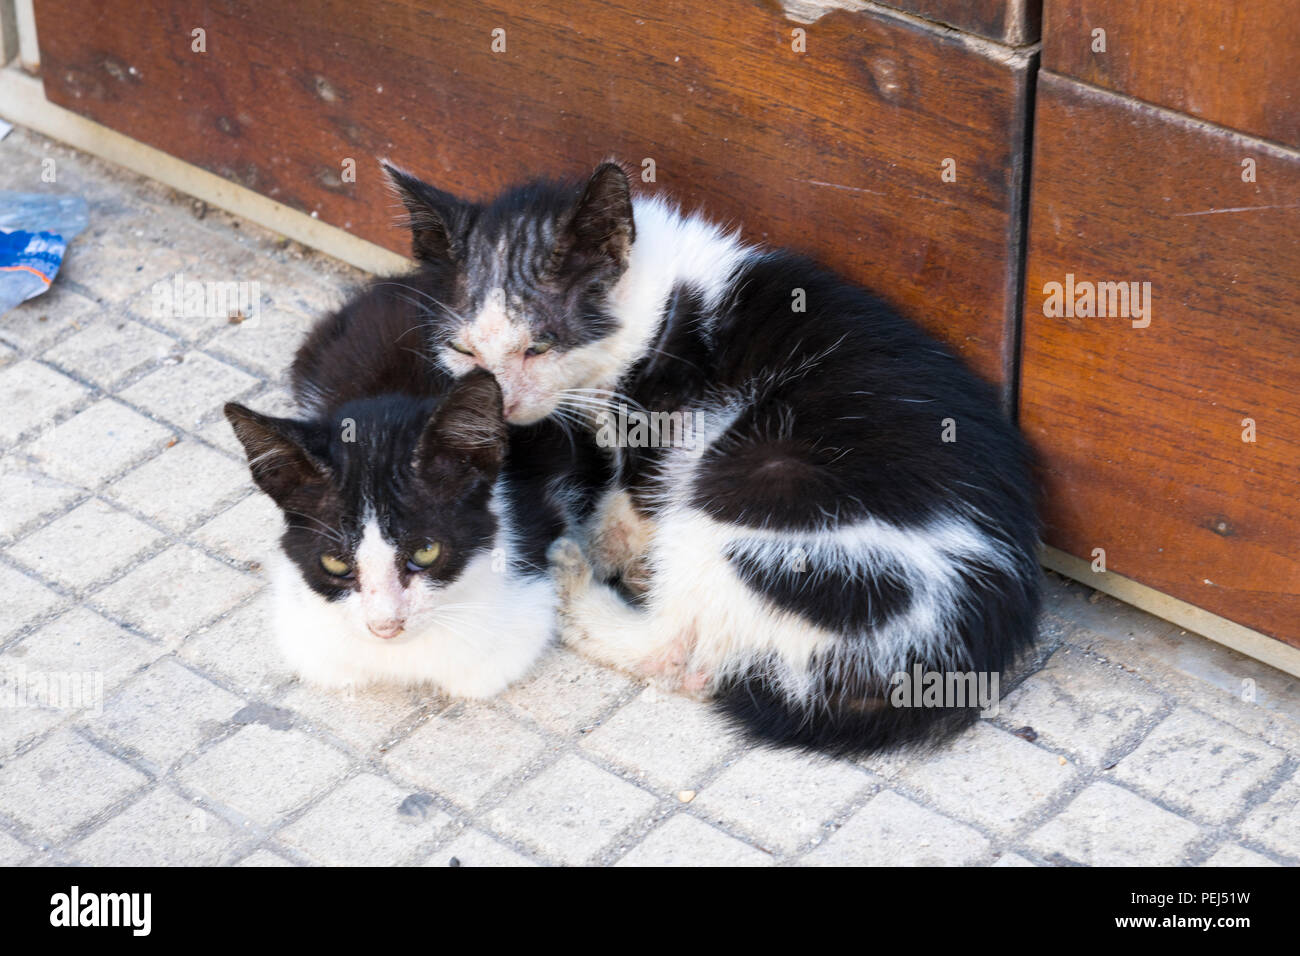 Italien Sizilien Syrakus Siracusa Ortygia zwei Süßen niedlichen Baby Katzen Kitten black & white kuscheln Kuscheln auf dem Boden von hölzernen Türen Stockfoto